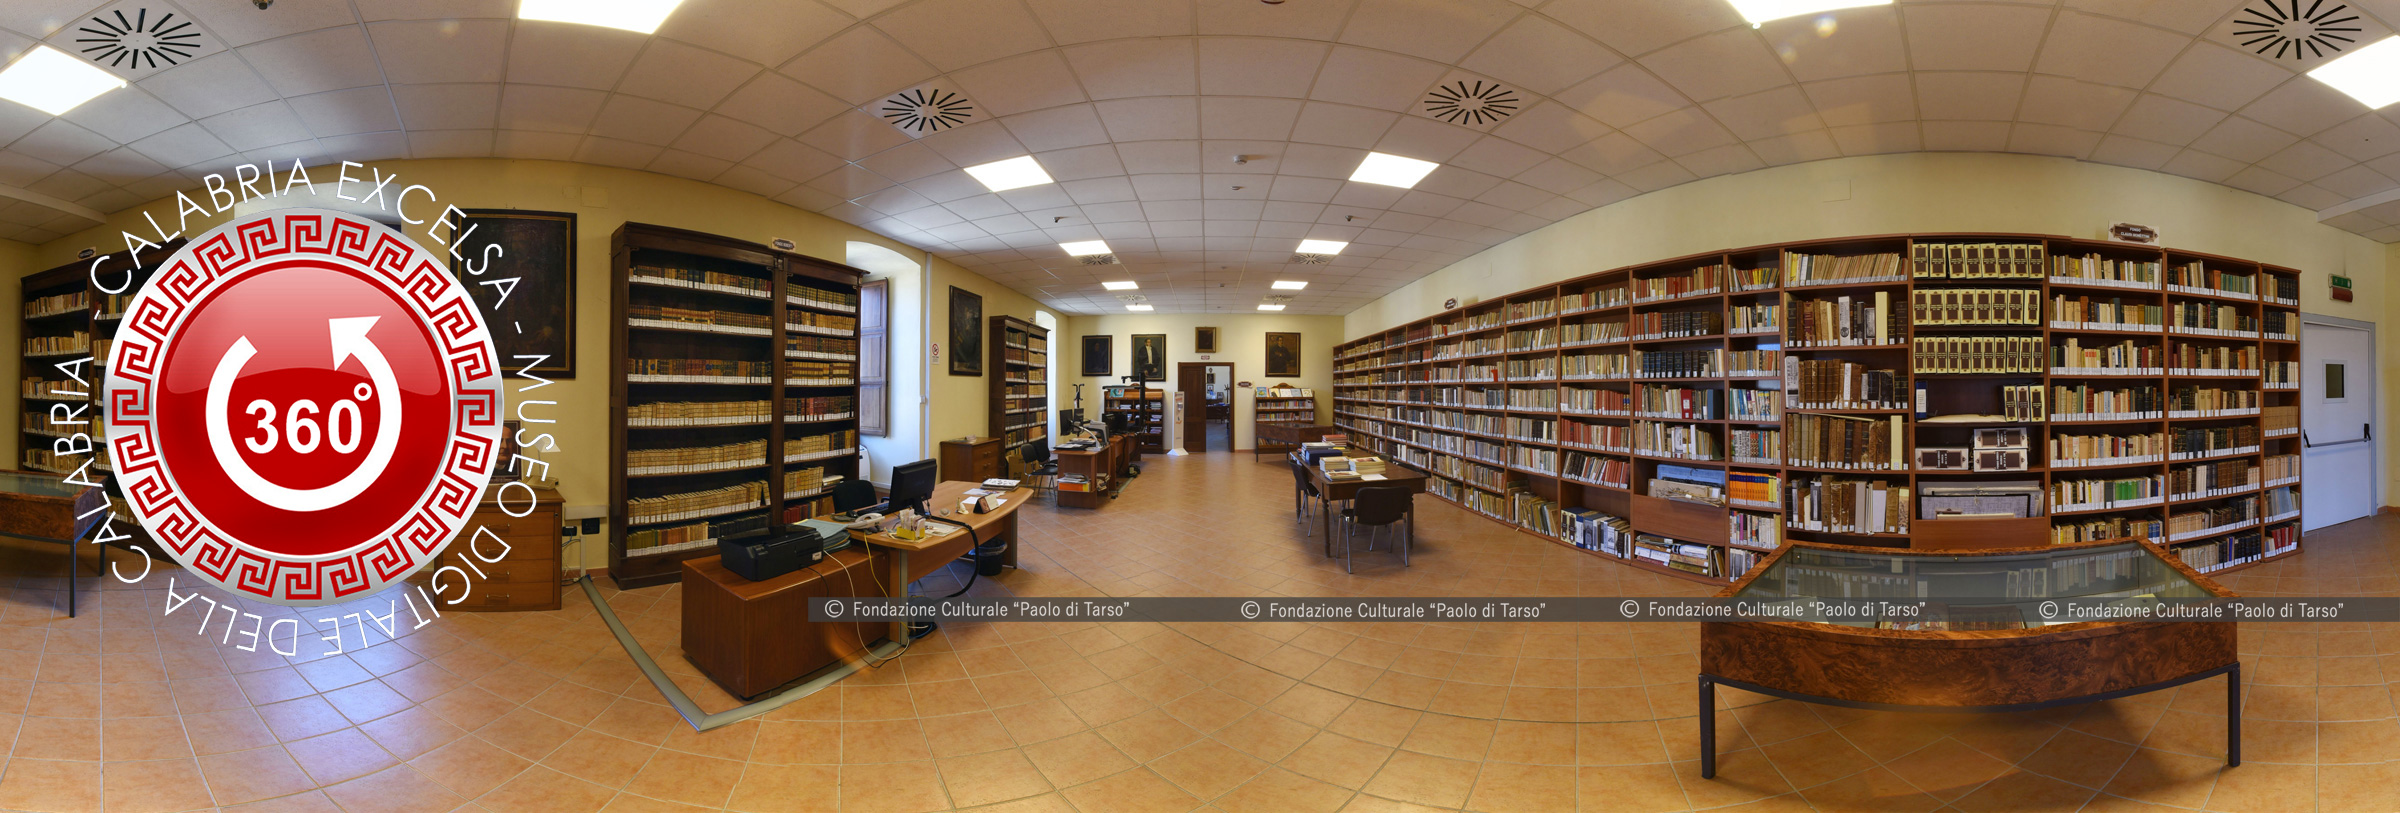 Museo Digitale della Calabria - CALABRIAEXCELSA - Biblioteca Nazionale di Cosenza